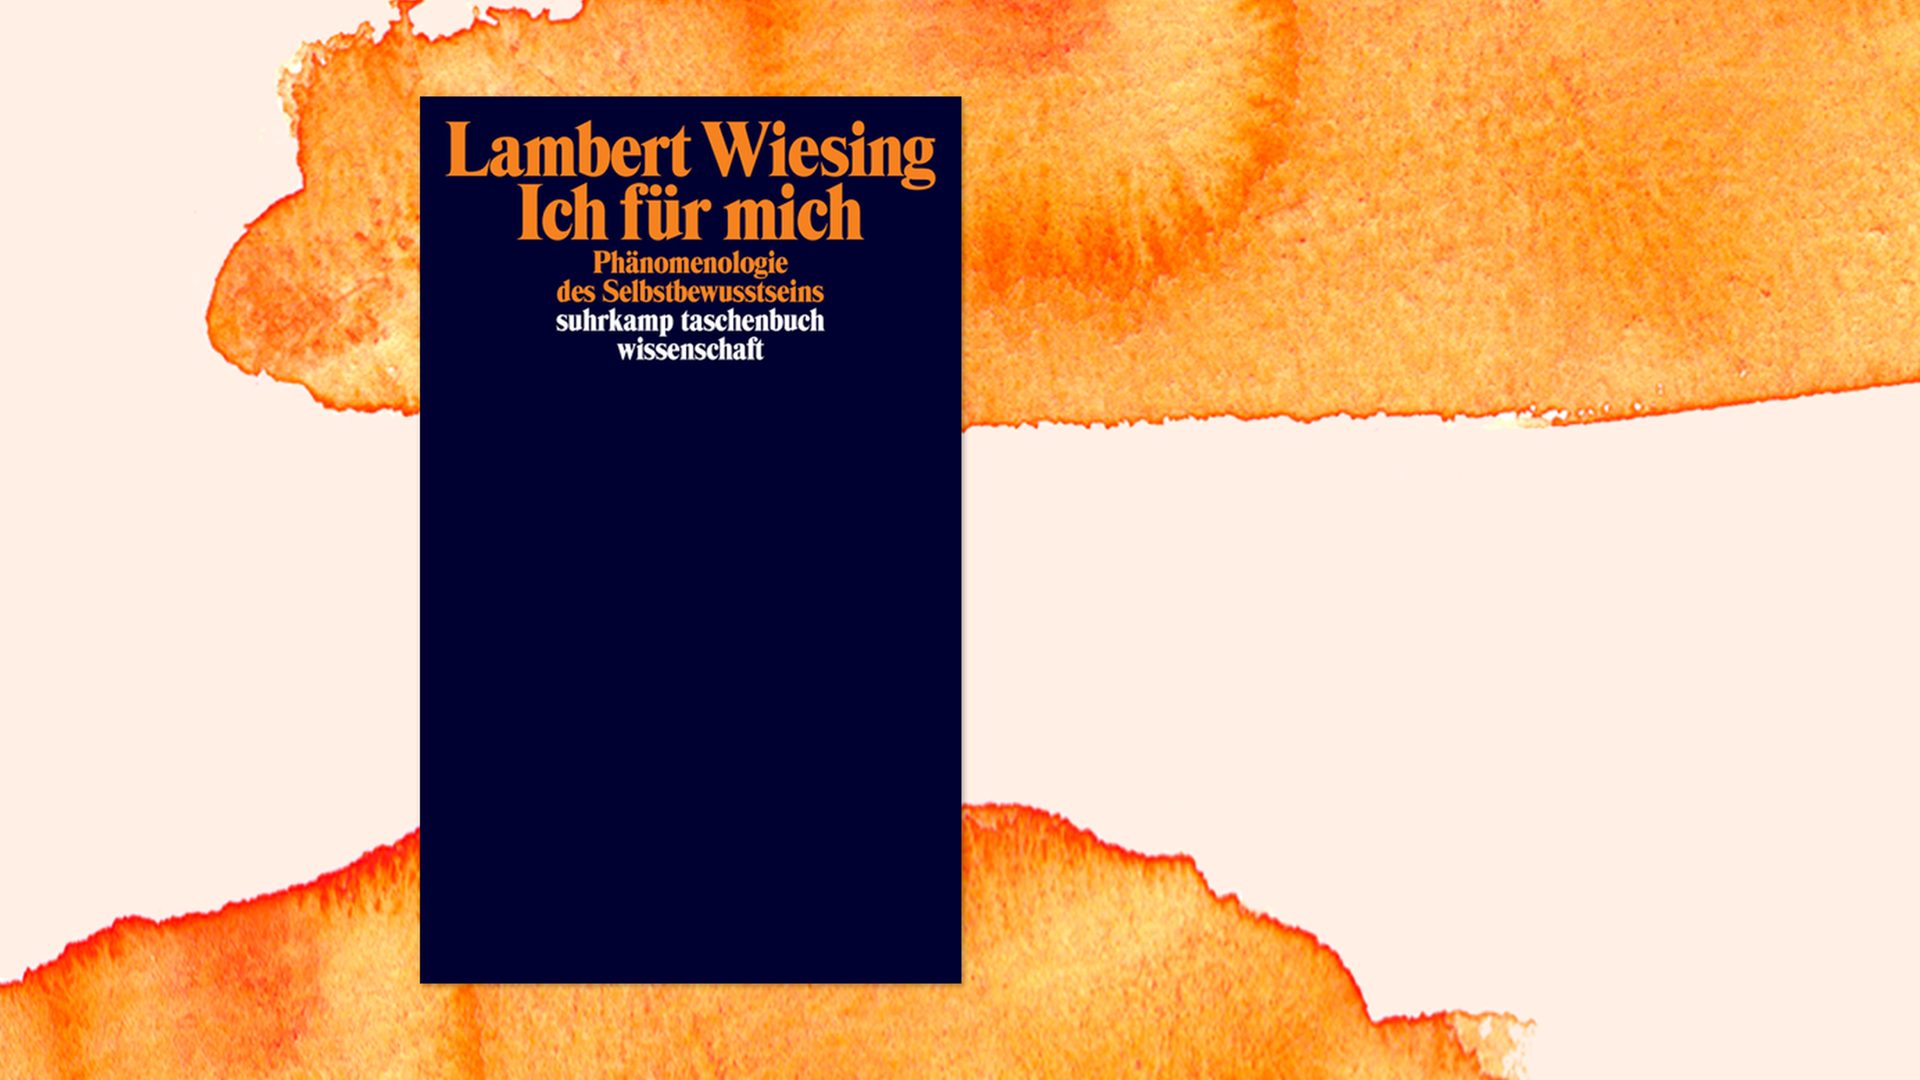 Buchcover zu "Ich für mich" von Lambert Wiesing auf orangefarbenem Aquarellhintergrund.